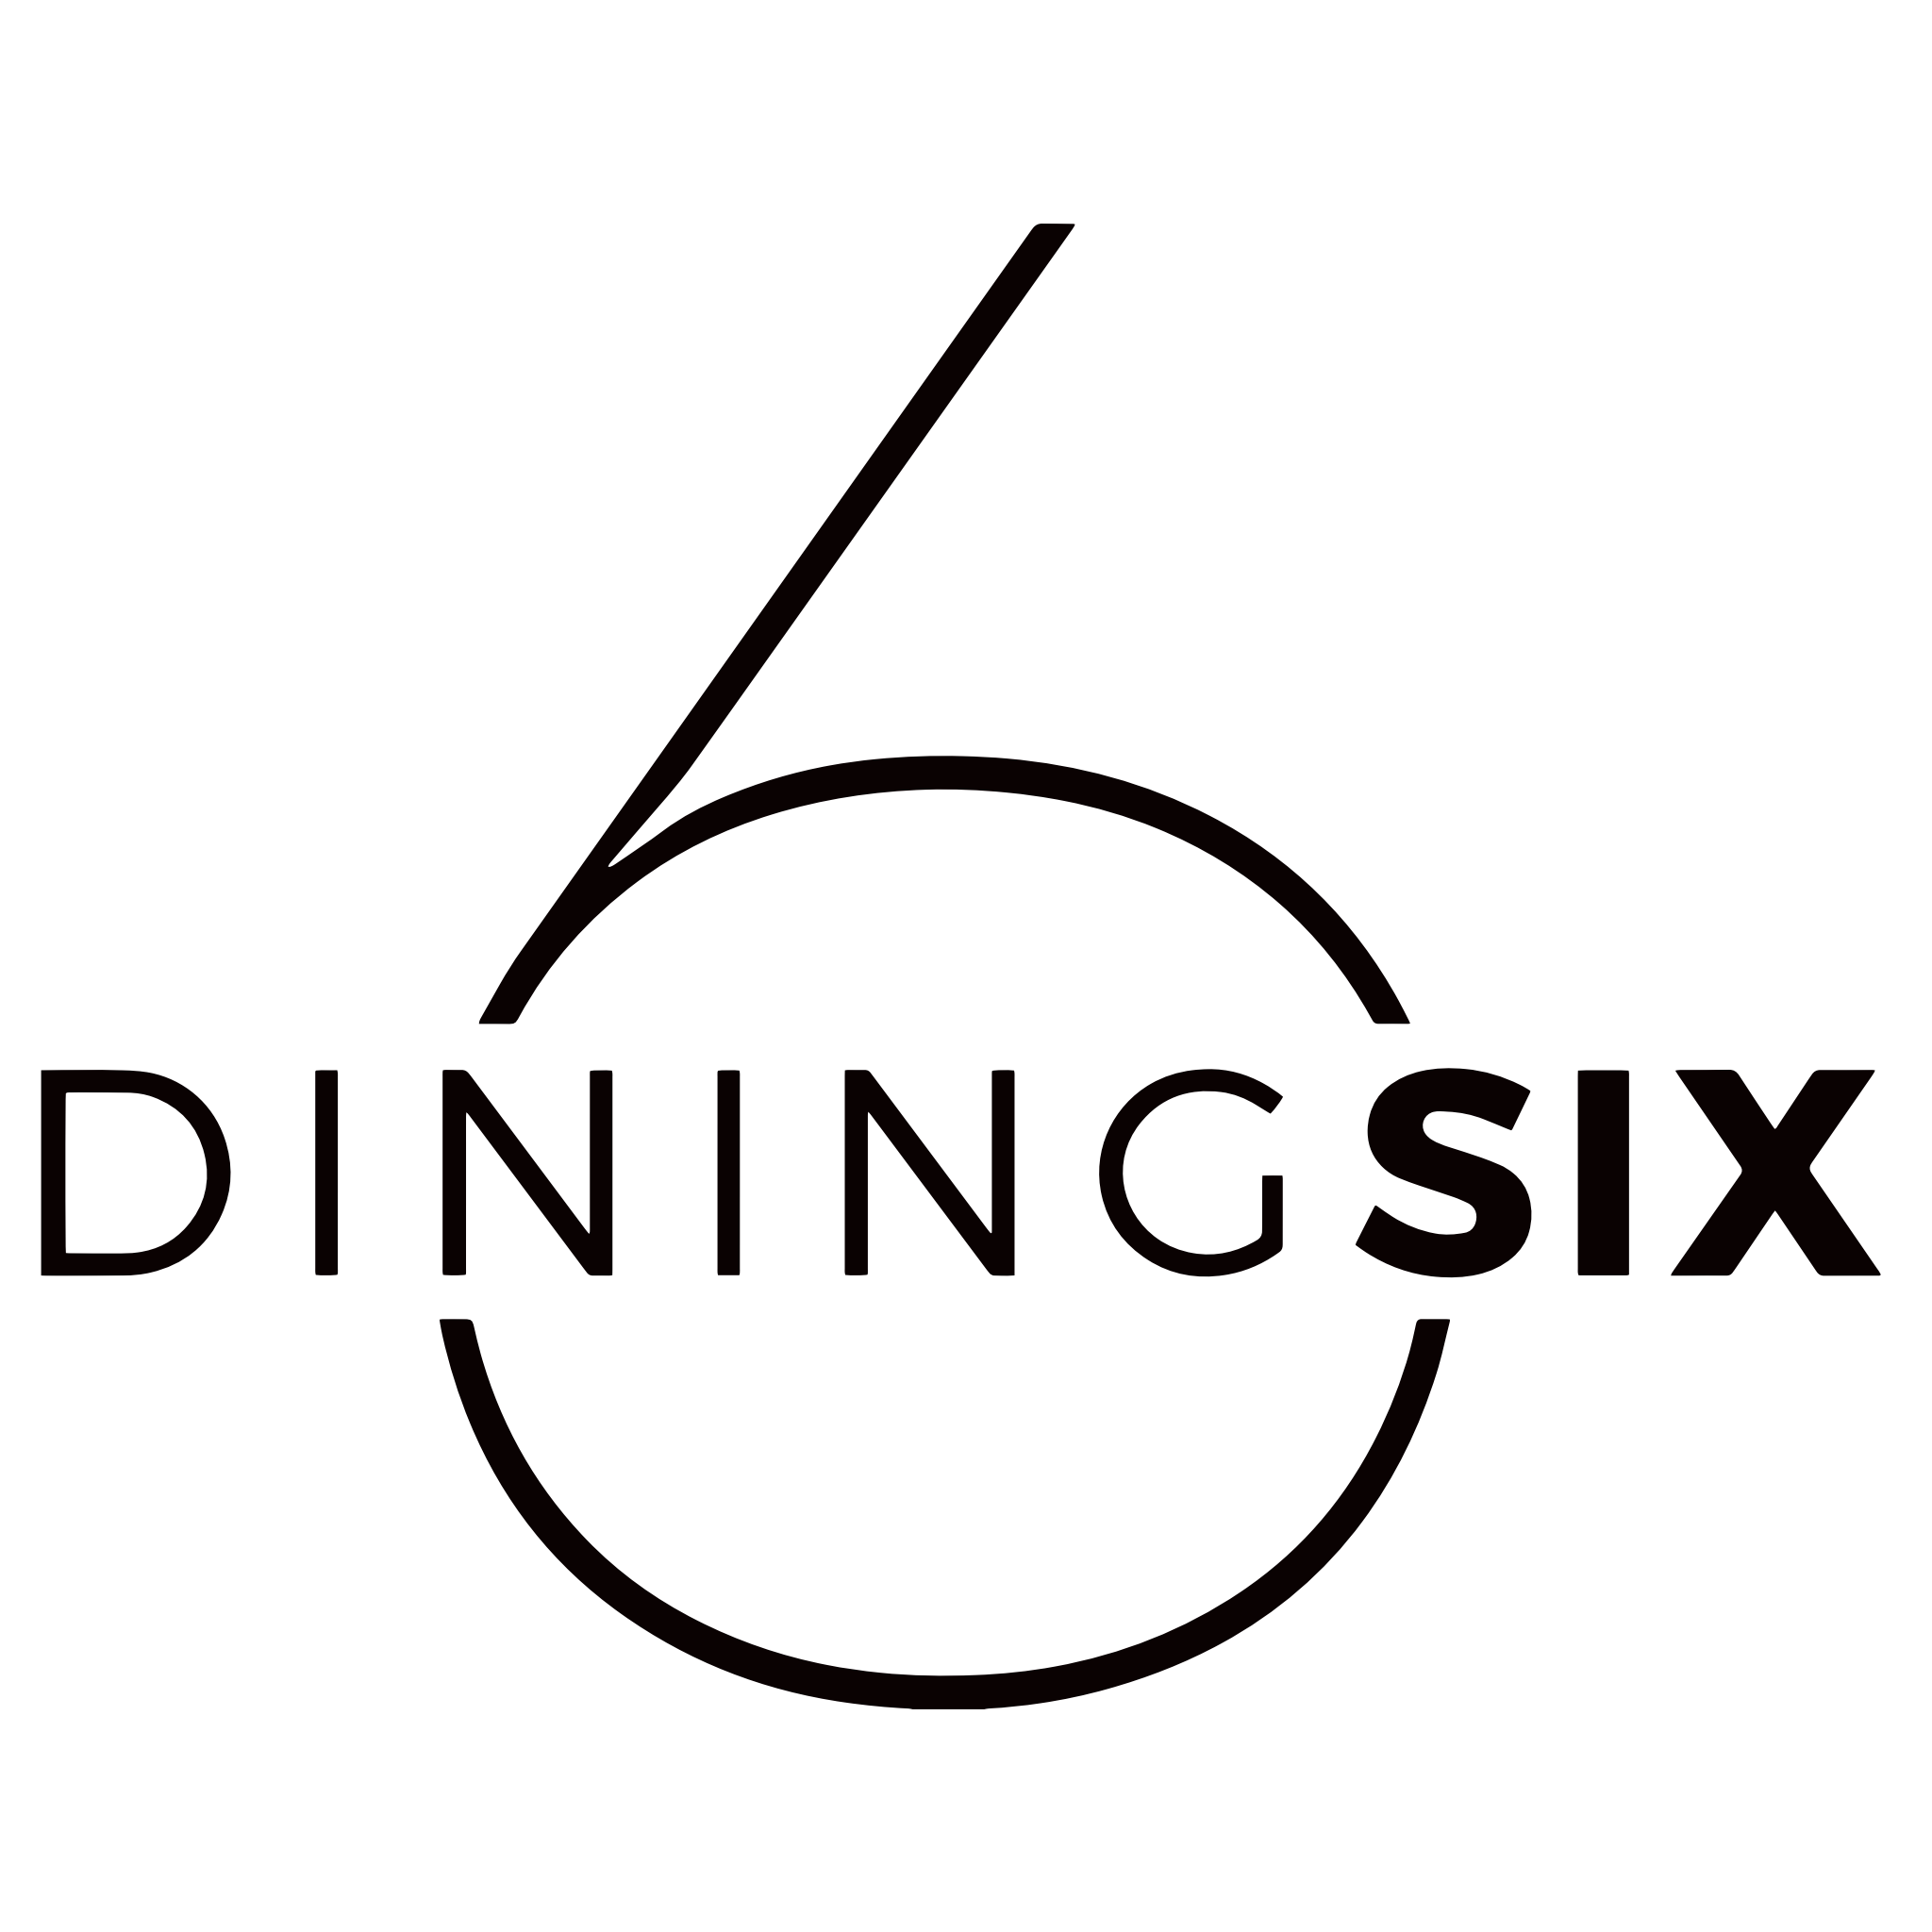 DiningSix_sort_RBG.png